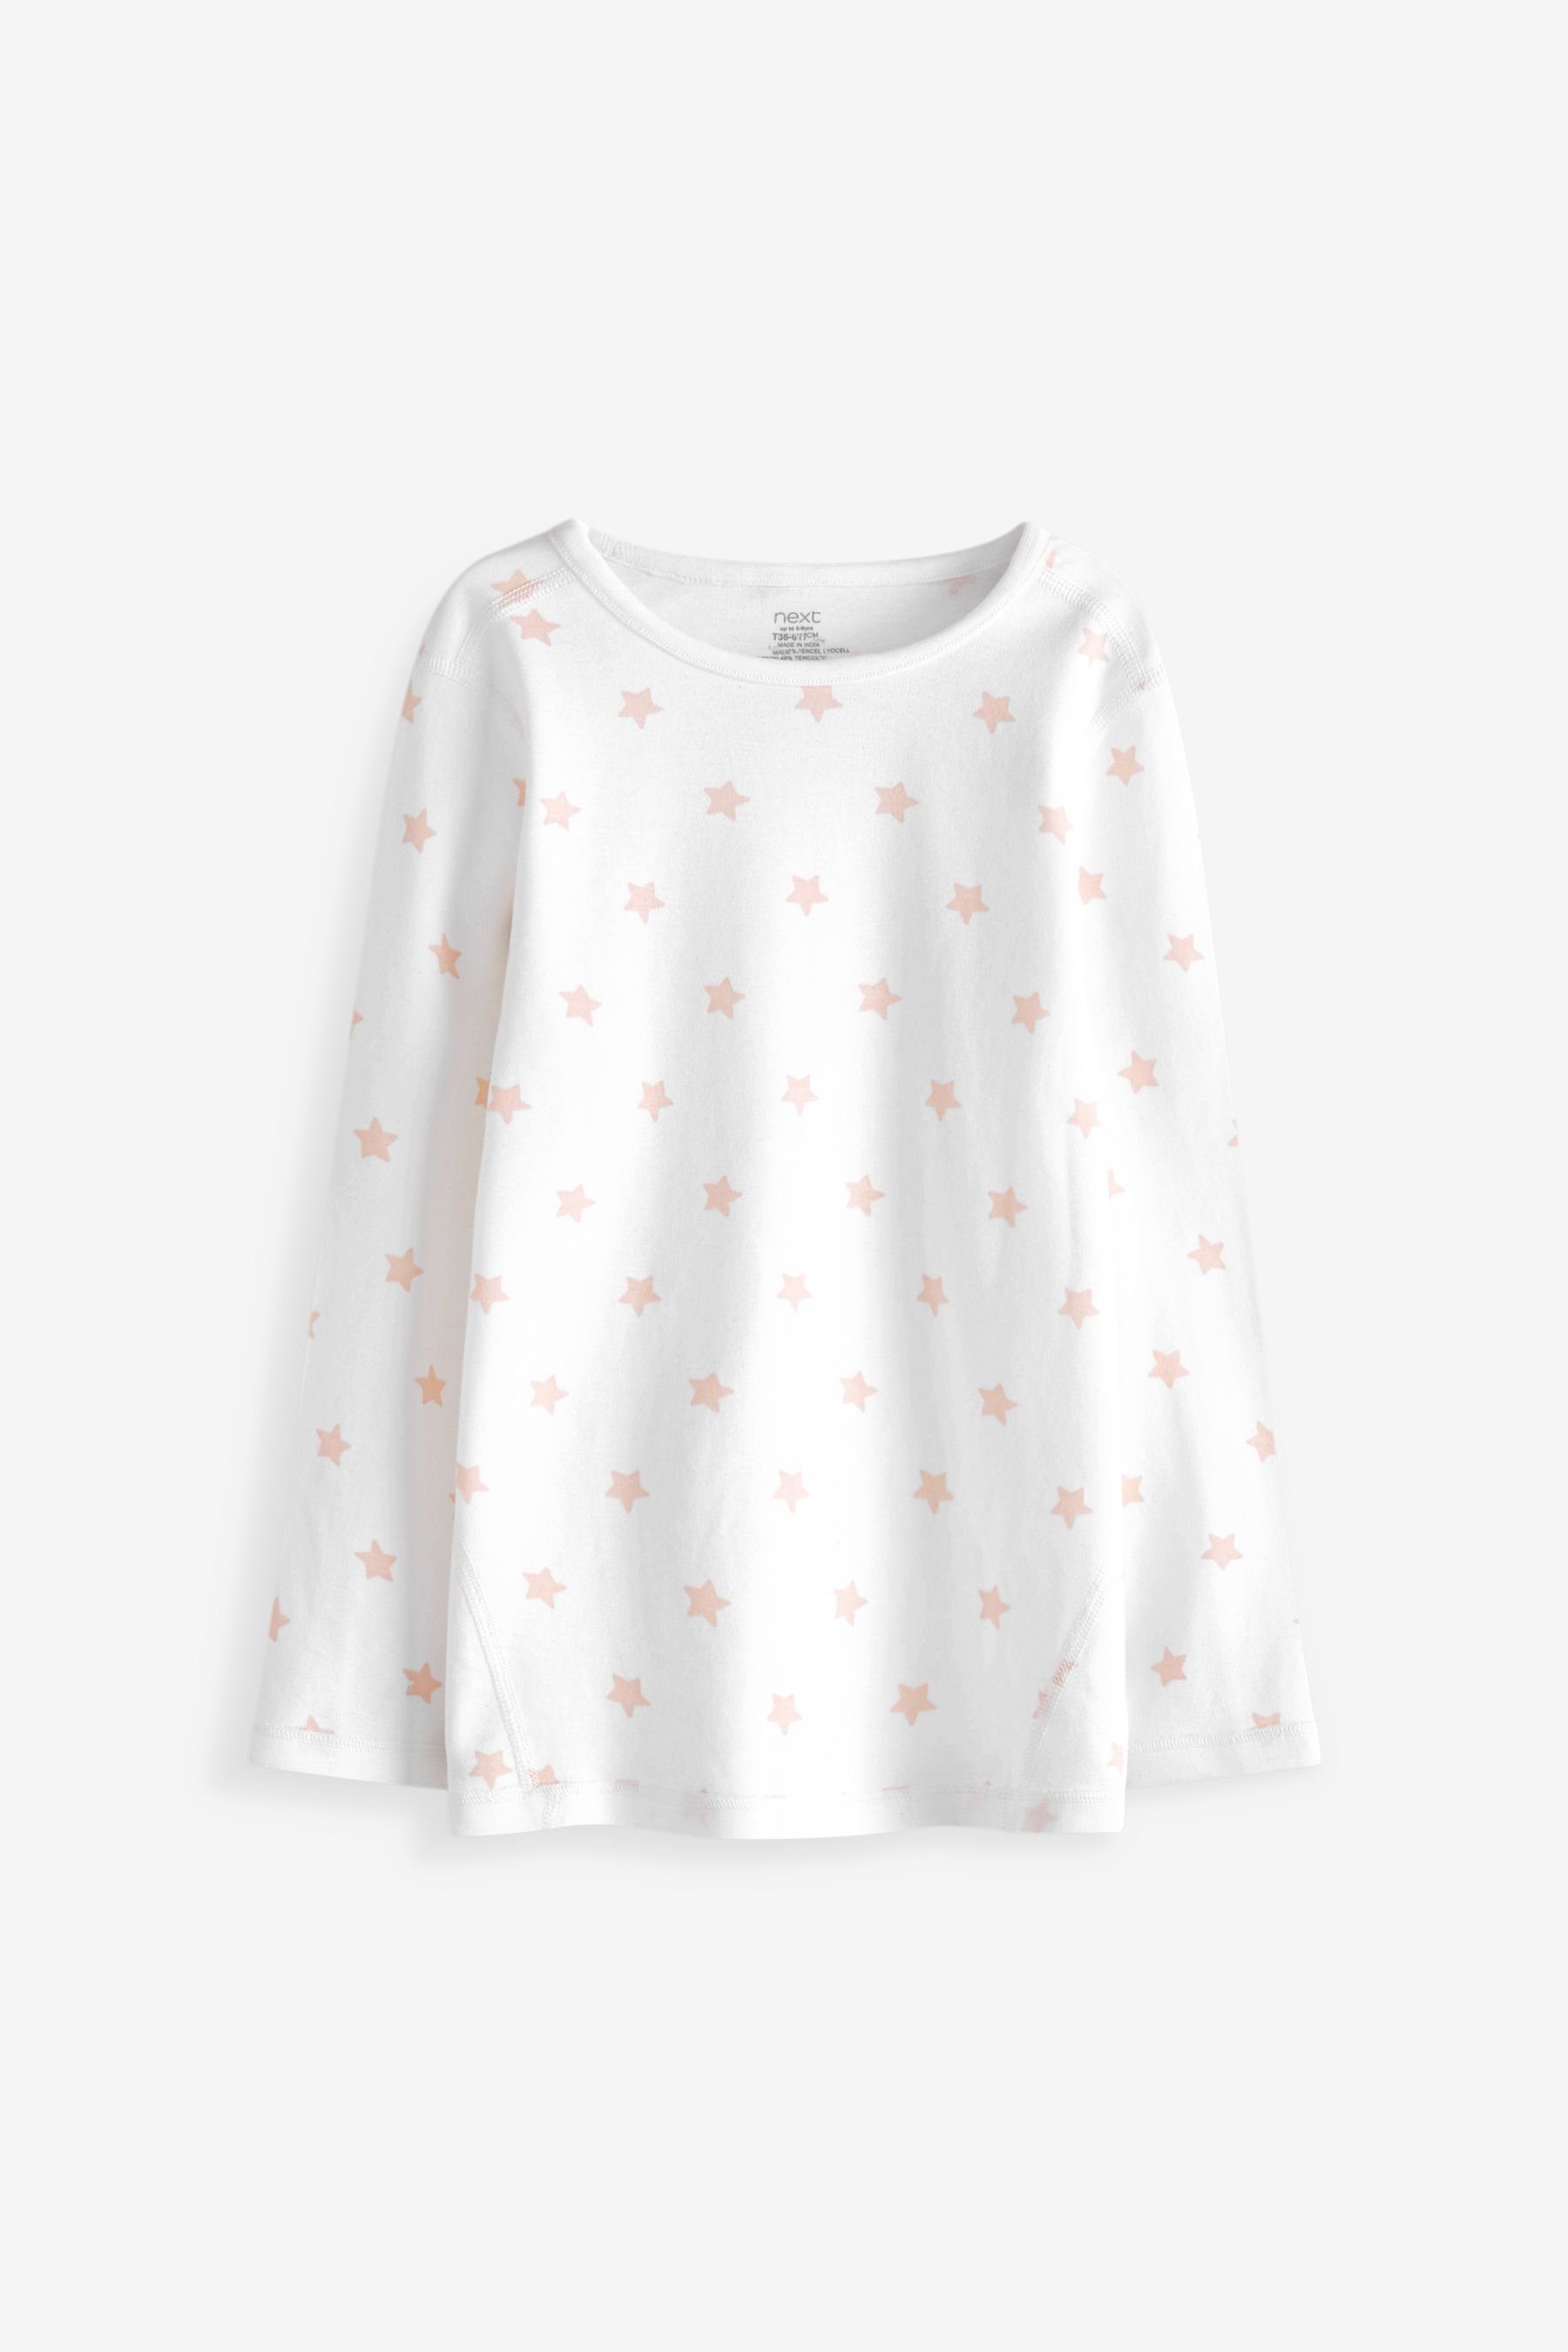 tlg) hautfreundlicher Next Kind Schlafanzug 2er-Pack (4 Pyjama To